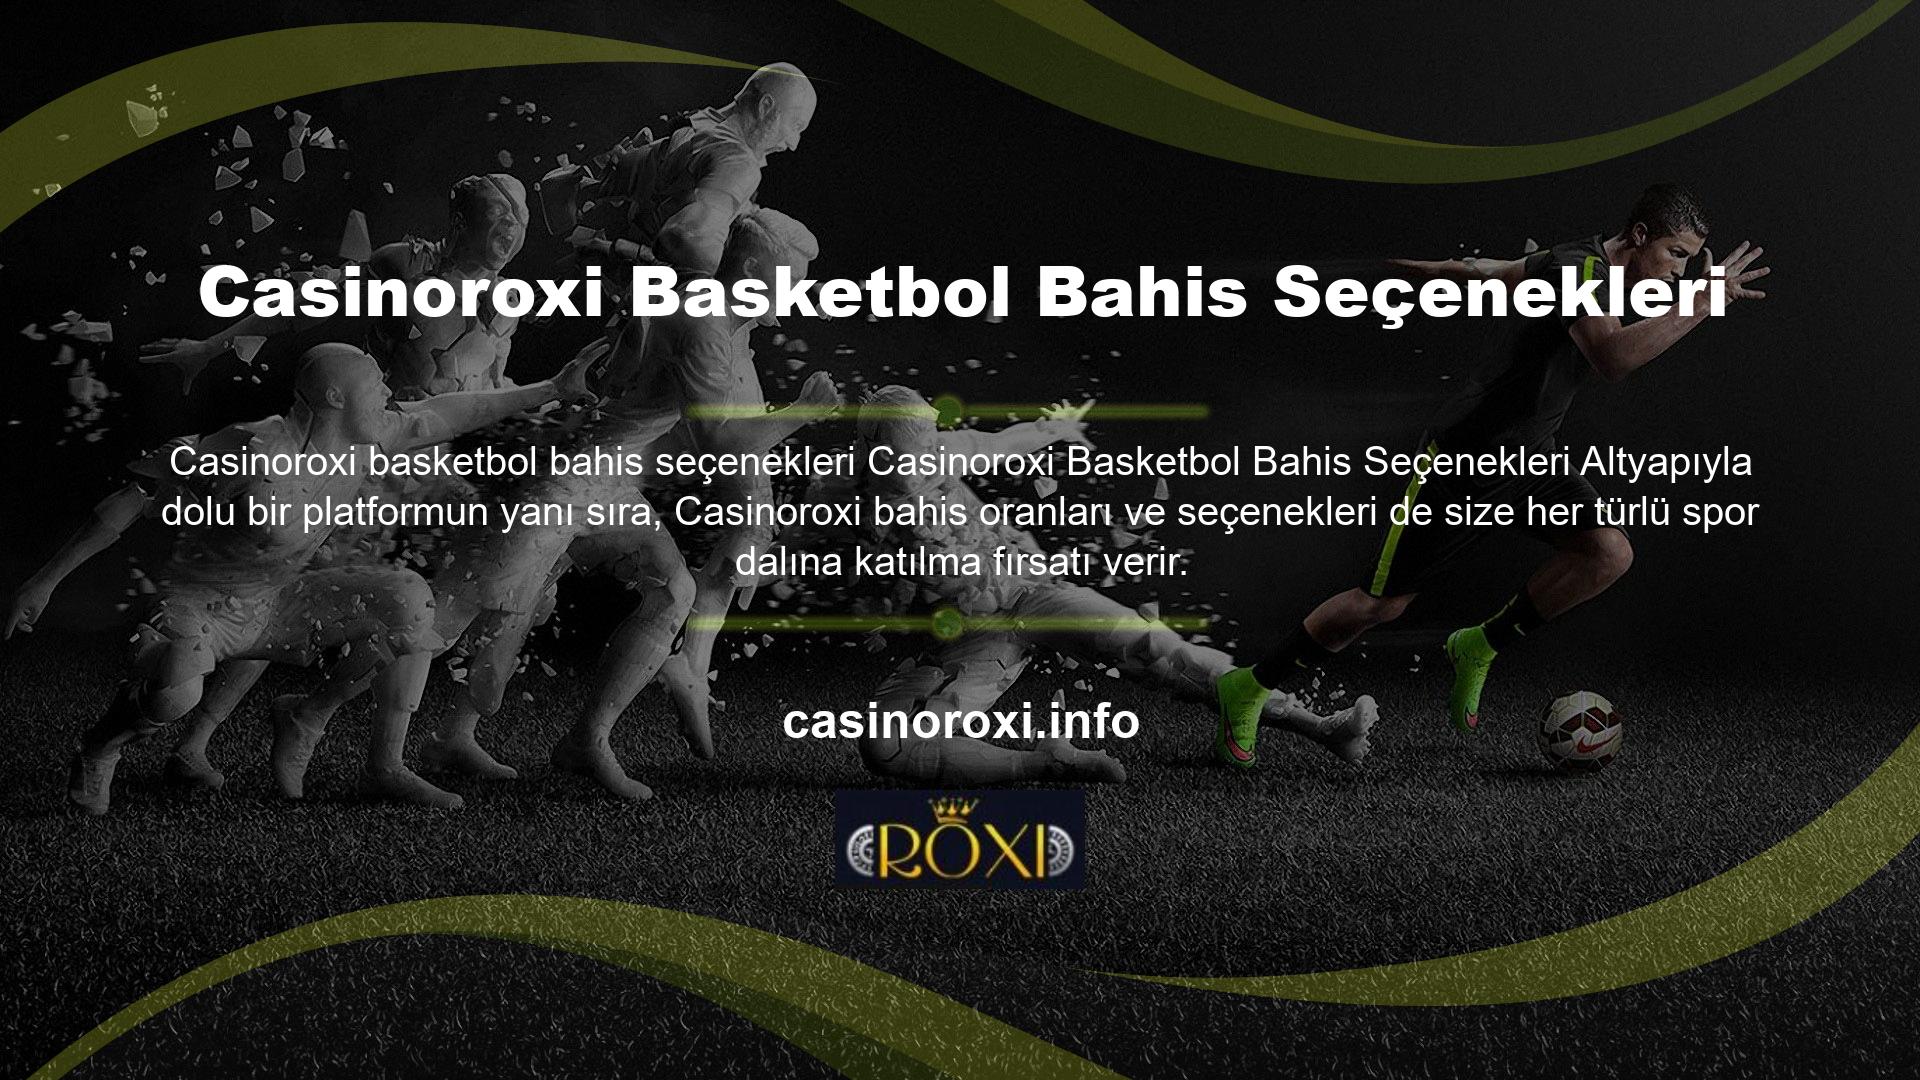 Aslında, Casinoroxi basketbol bahis oranları ile her durumda para kazanabilirsiniz